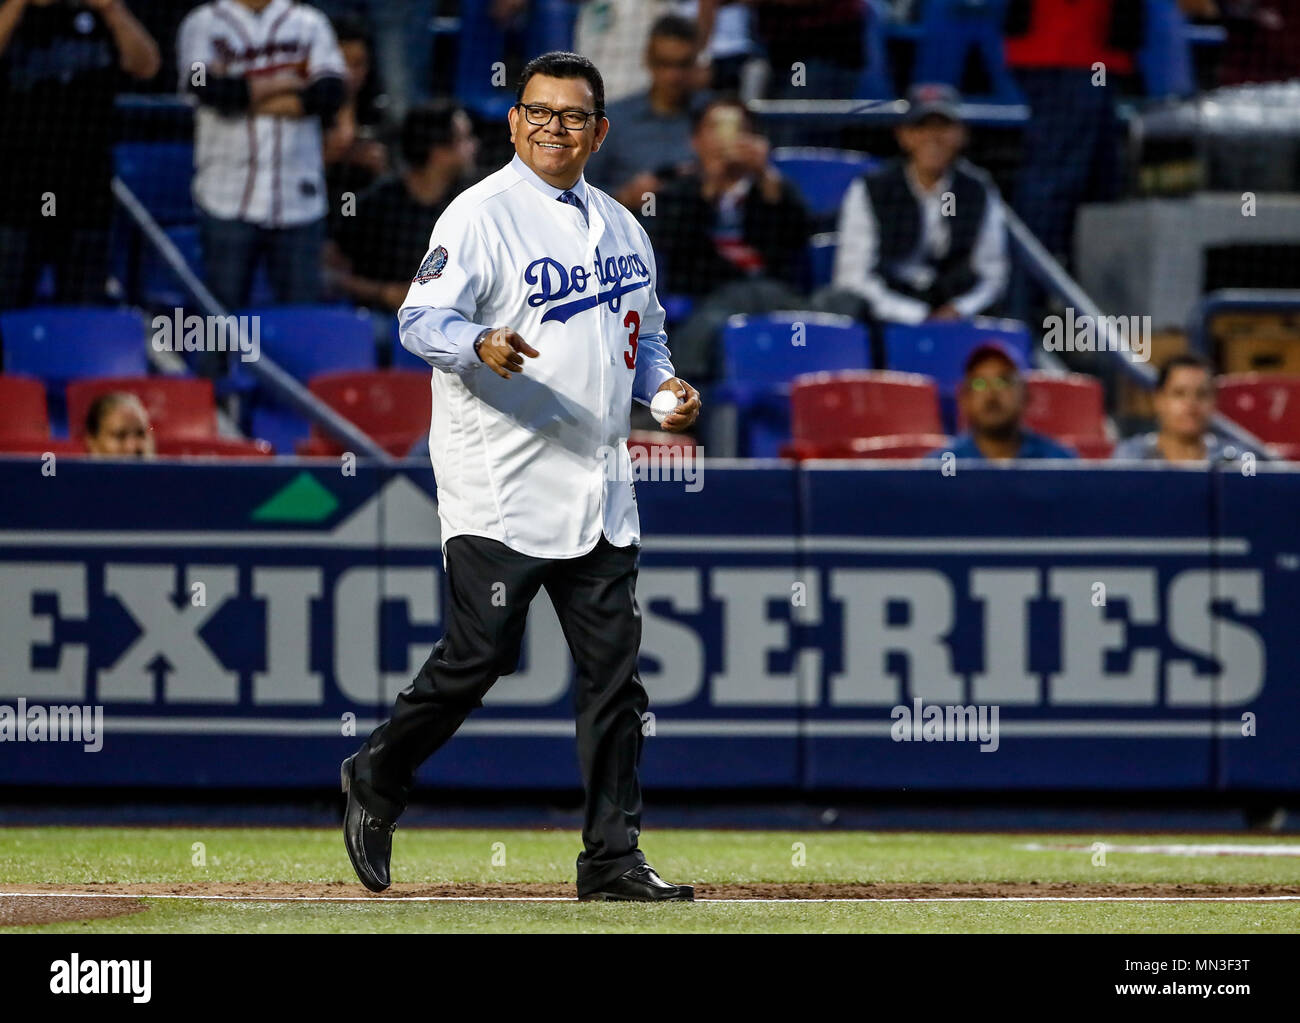 Fernando Valenzuela lanza la primera bola para el playball del partido de beisbol de los Dodgers de Los Angeles contra Padres de San Diego, durante el primer juego de la serie las Ligas Mayores del Beisbol en Monterrey, Mexico el 4 de Mayo 2018. (Photo: Luis Gutierrez) Stock Photo